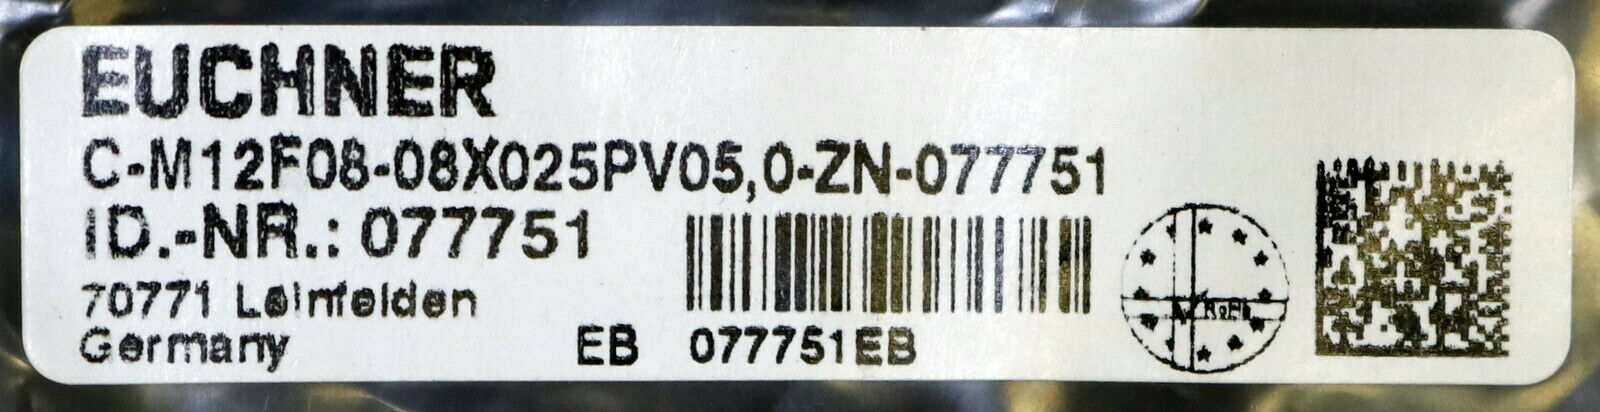 EUCHNER Anschlussleitung für Sicherheitsschalter C-M12F08-08X025PV0,5-ZN-077751